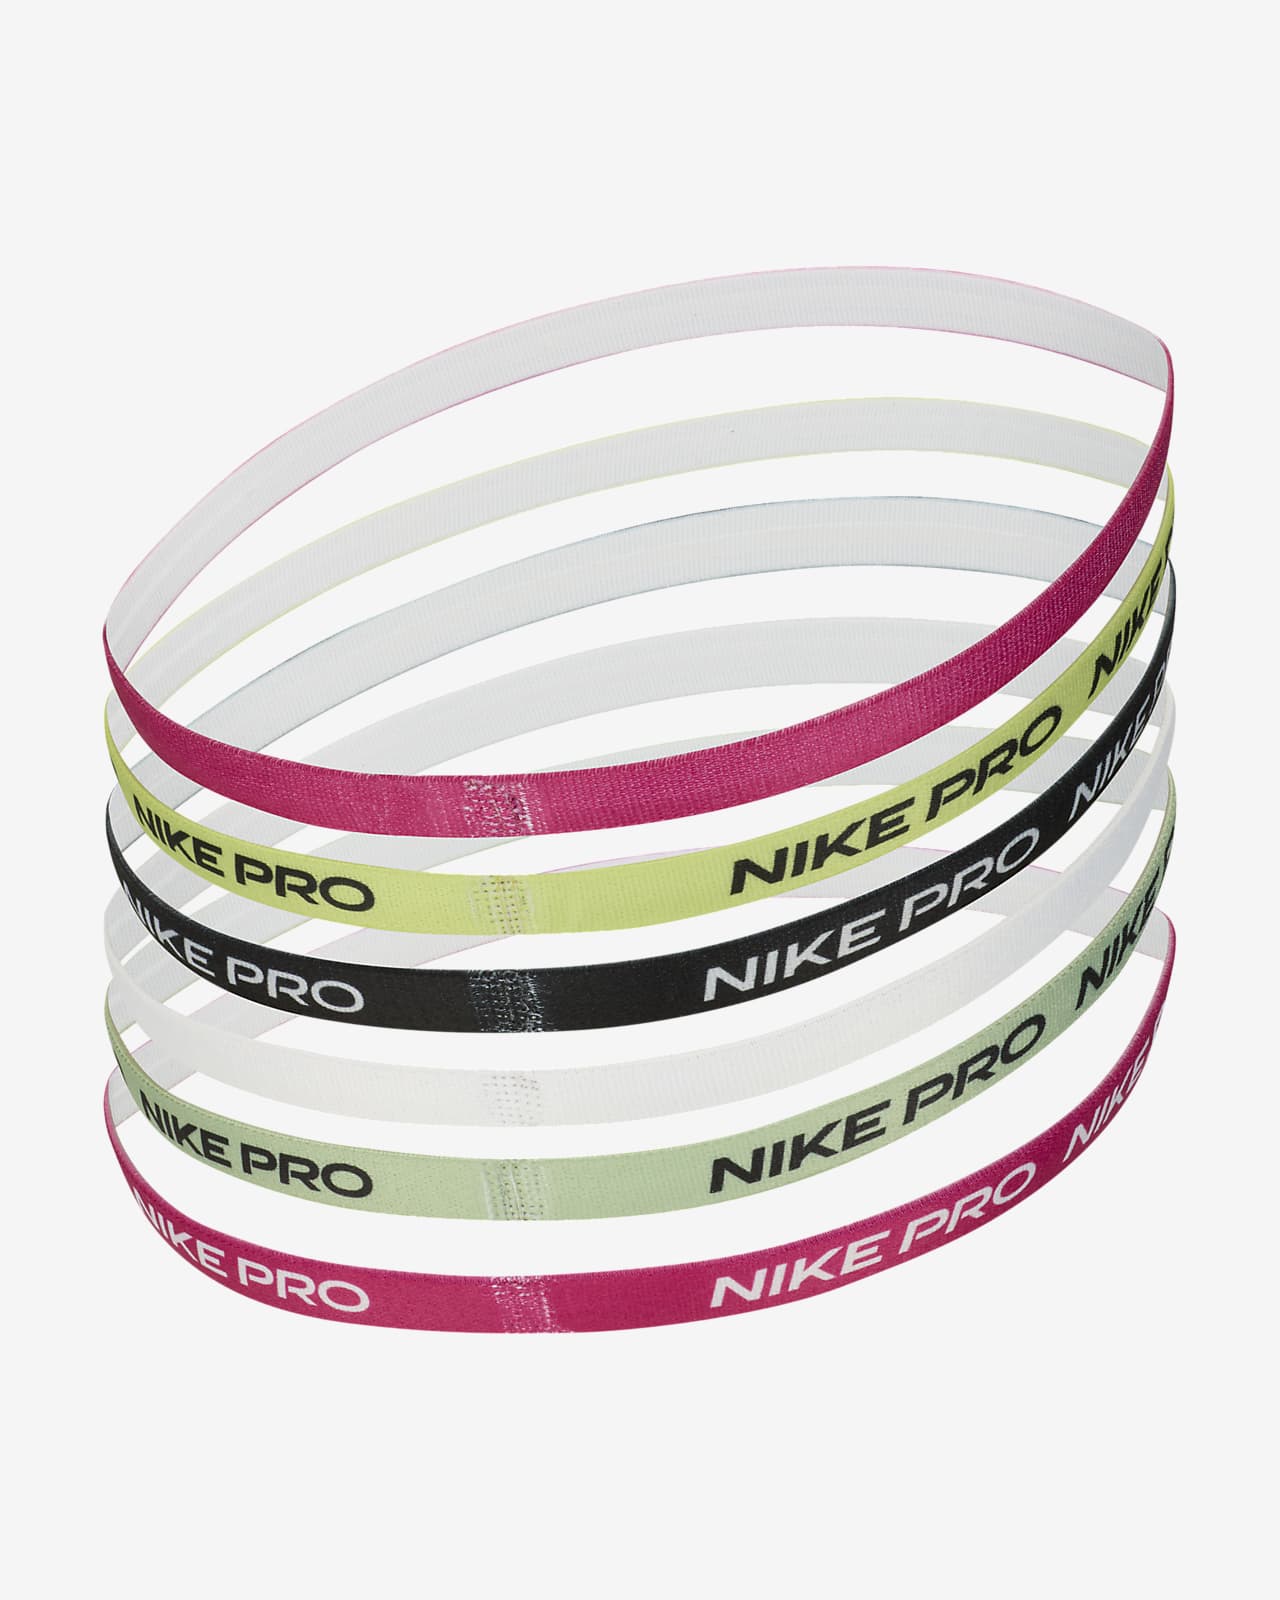 Pack 3 cintas de pelo Nike